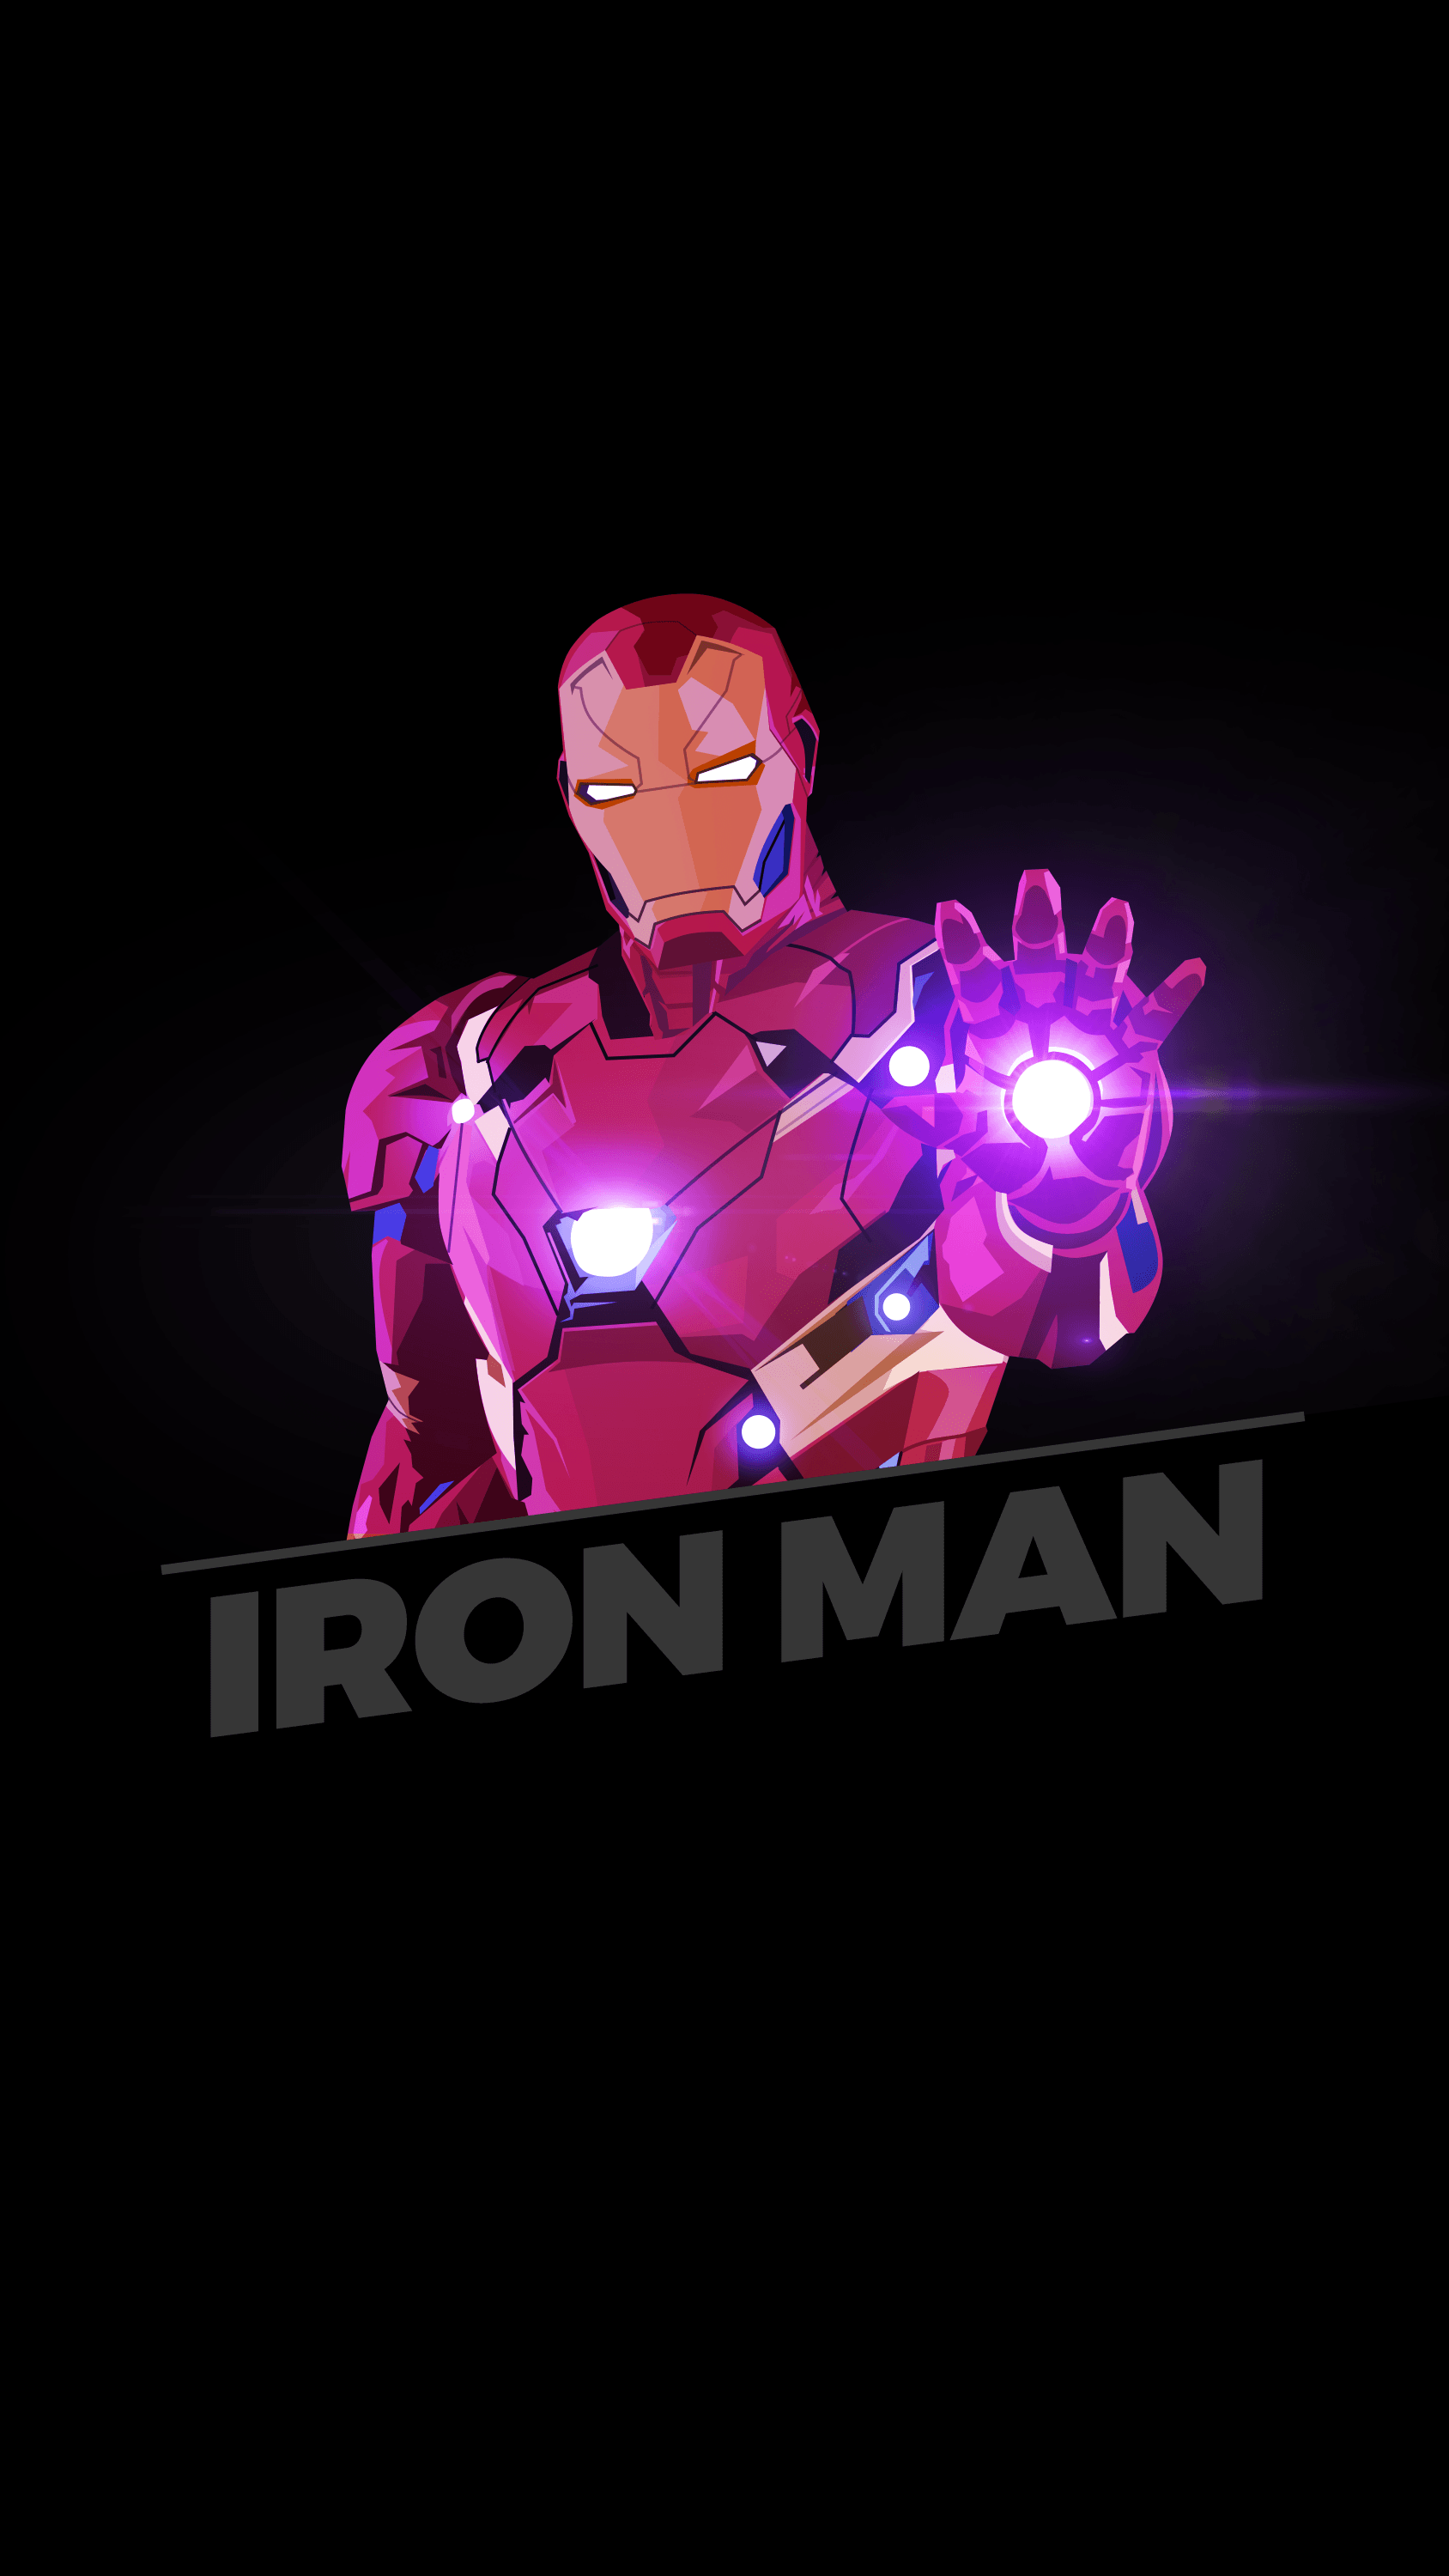 Iron Man AMOLED Wallpapers - Álbum en Imgur